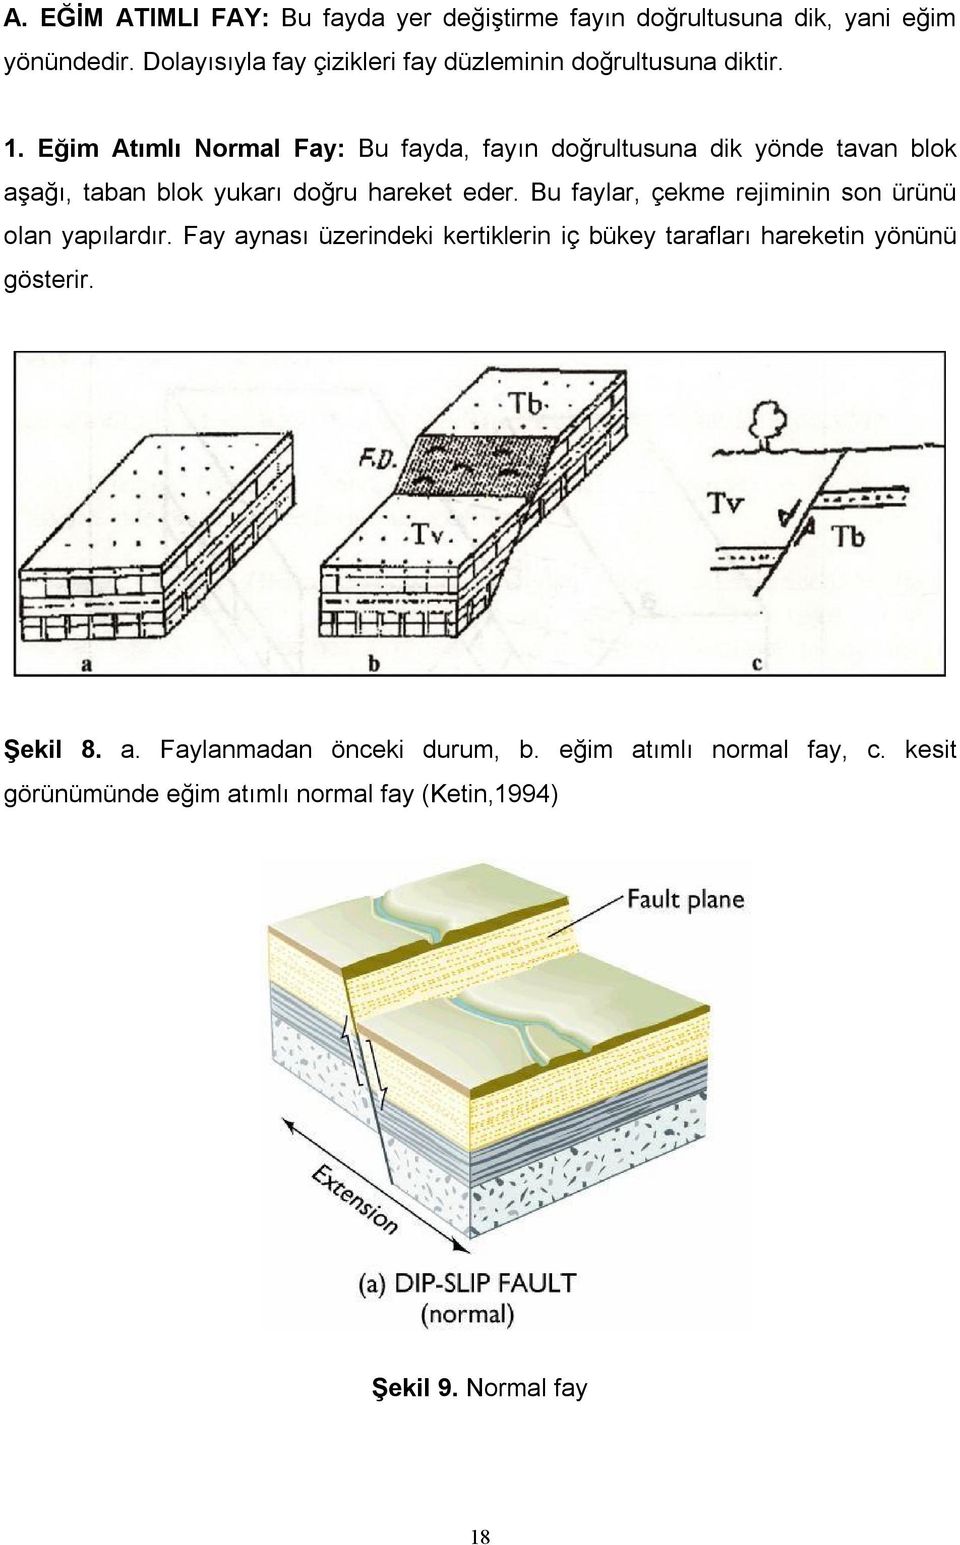 Eğim Atımlı Normal Fay: Bu fayda, fayın doğrultusuna dik yönde tavan blok aşağı, taban blok yukarı doğru hareket eder.